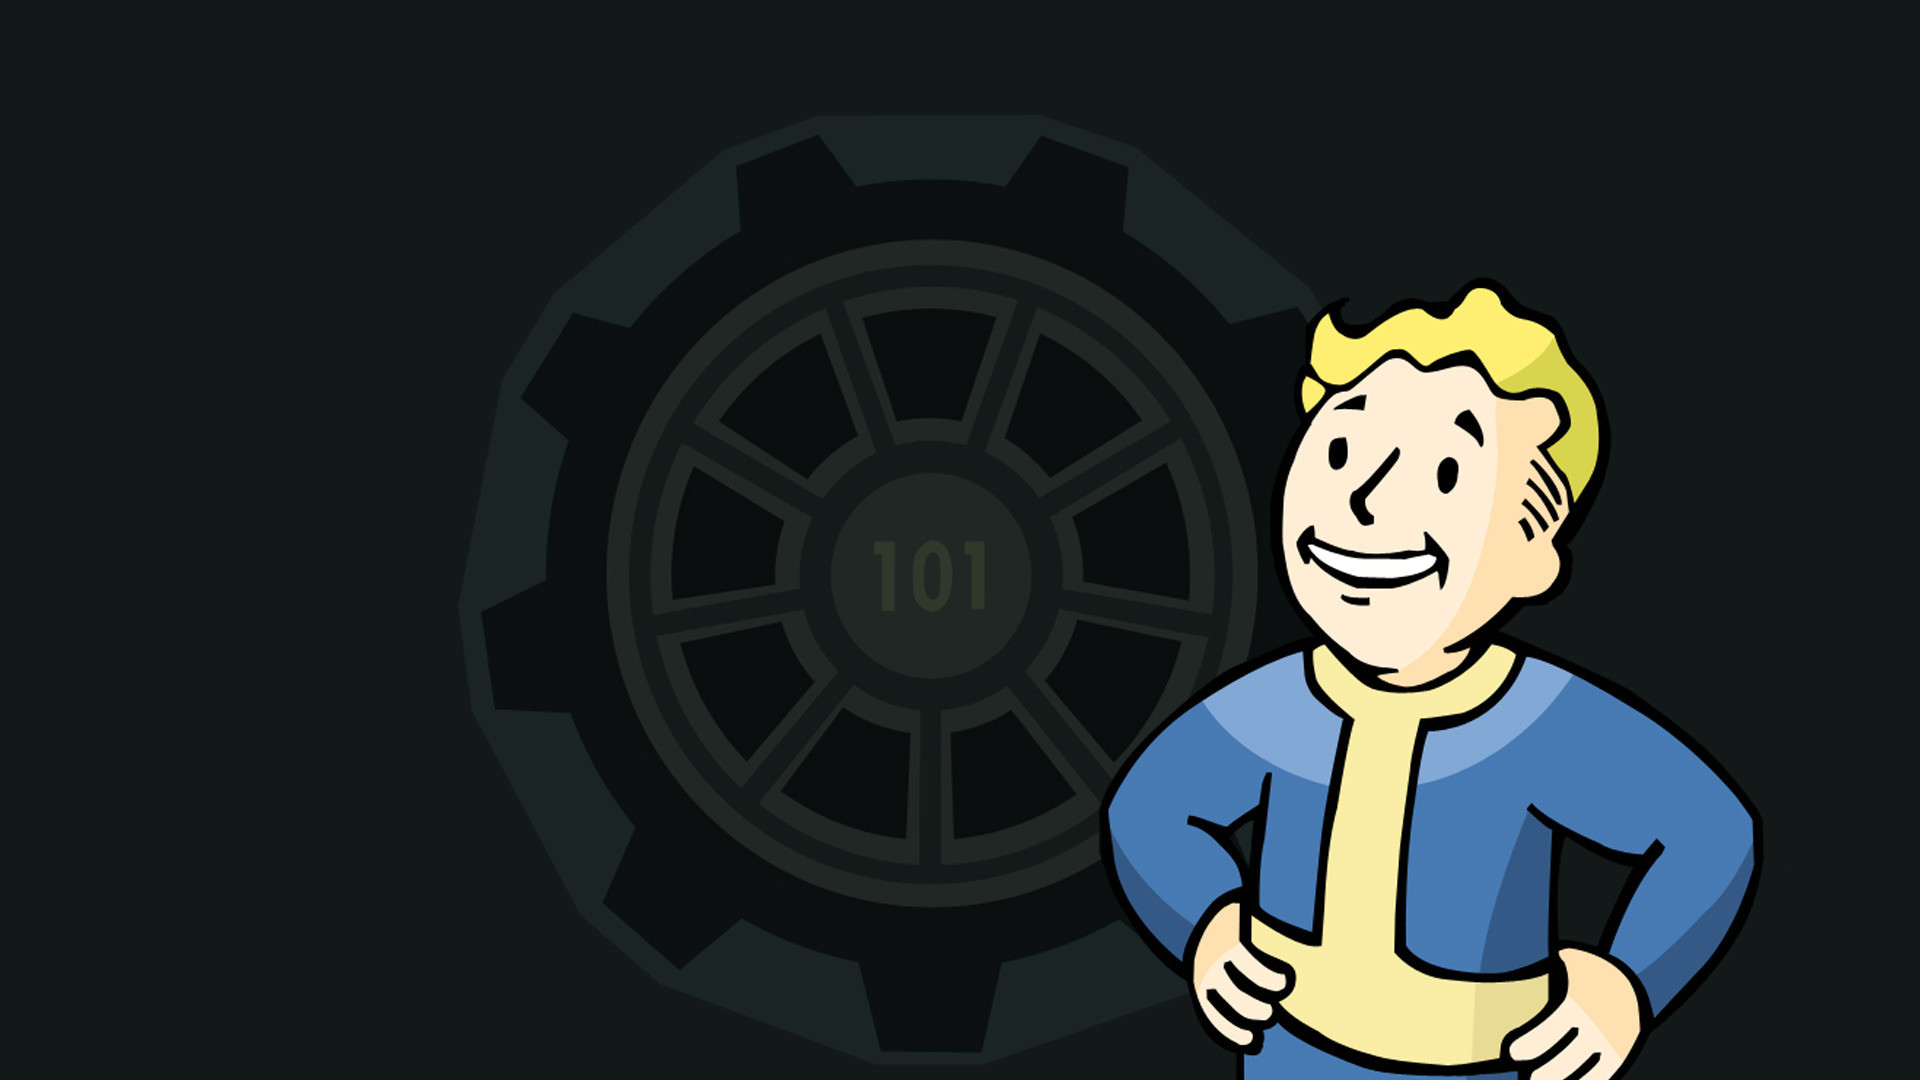 Vault Boy – Fallout wallpaper